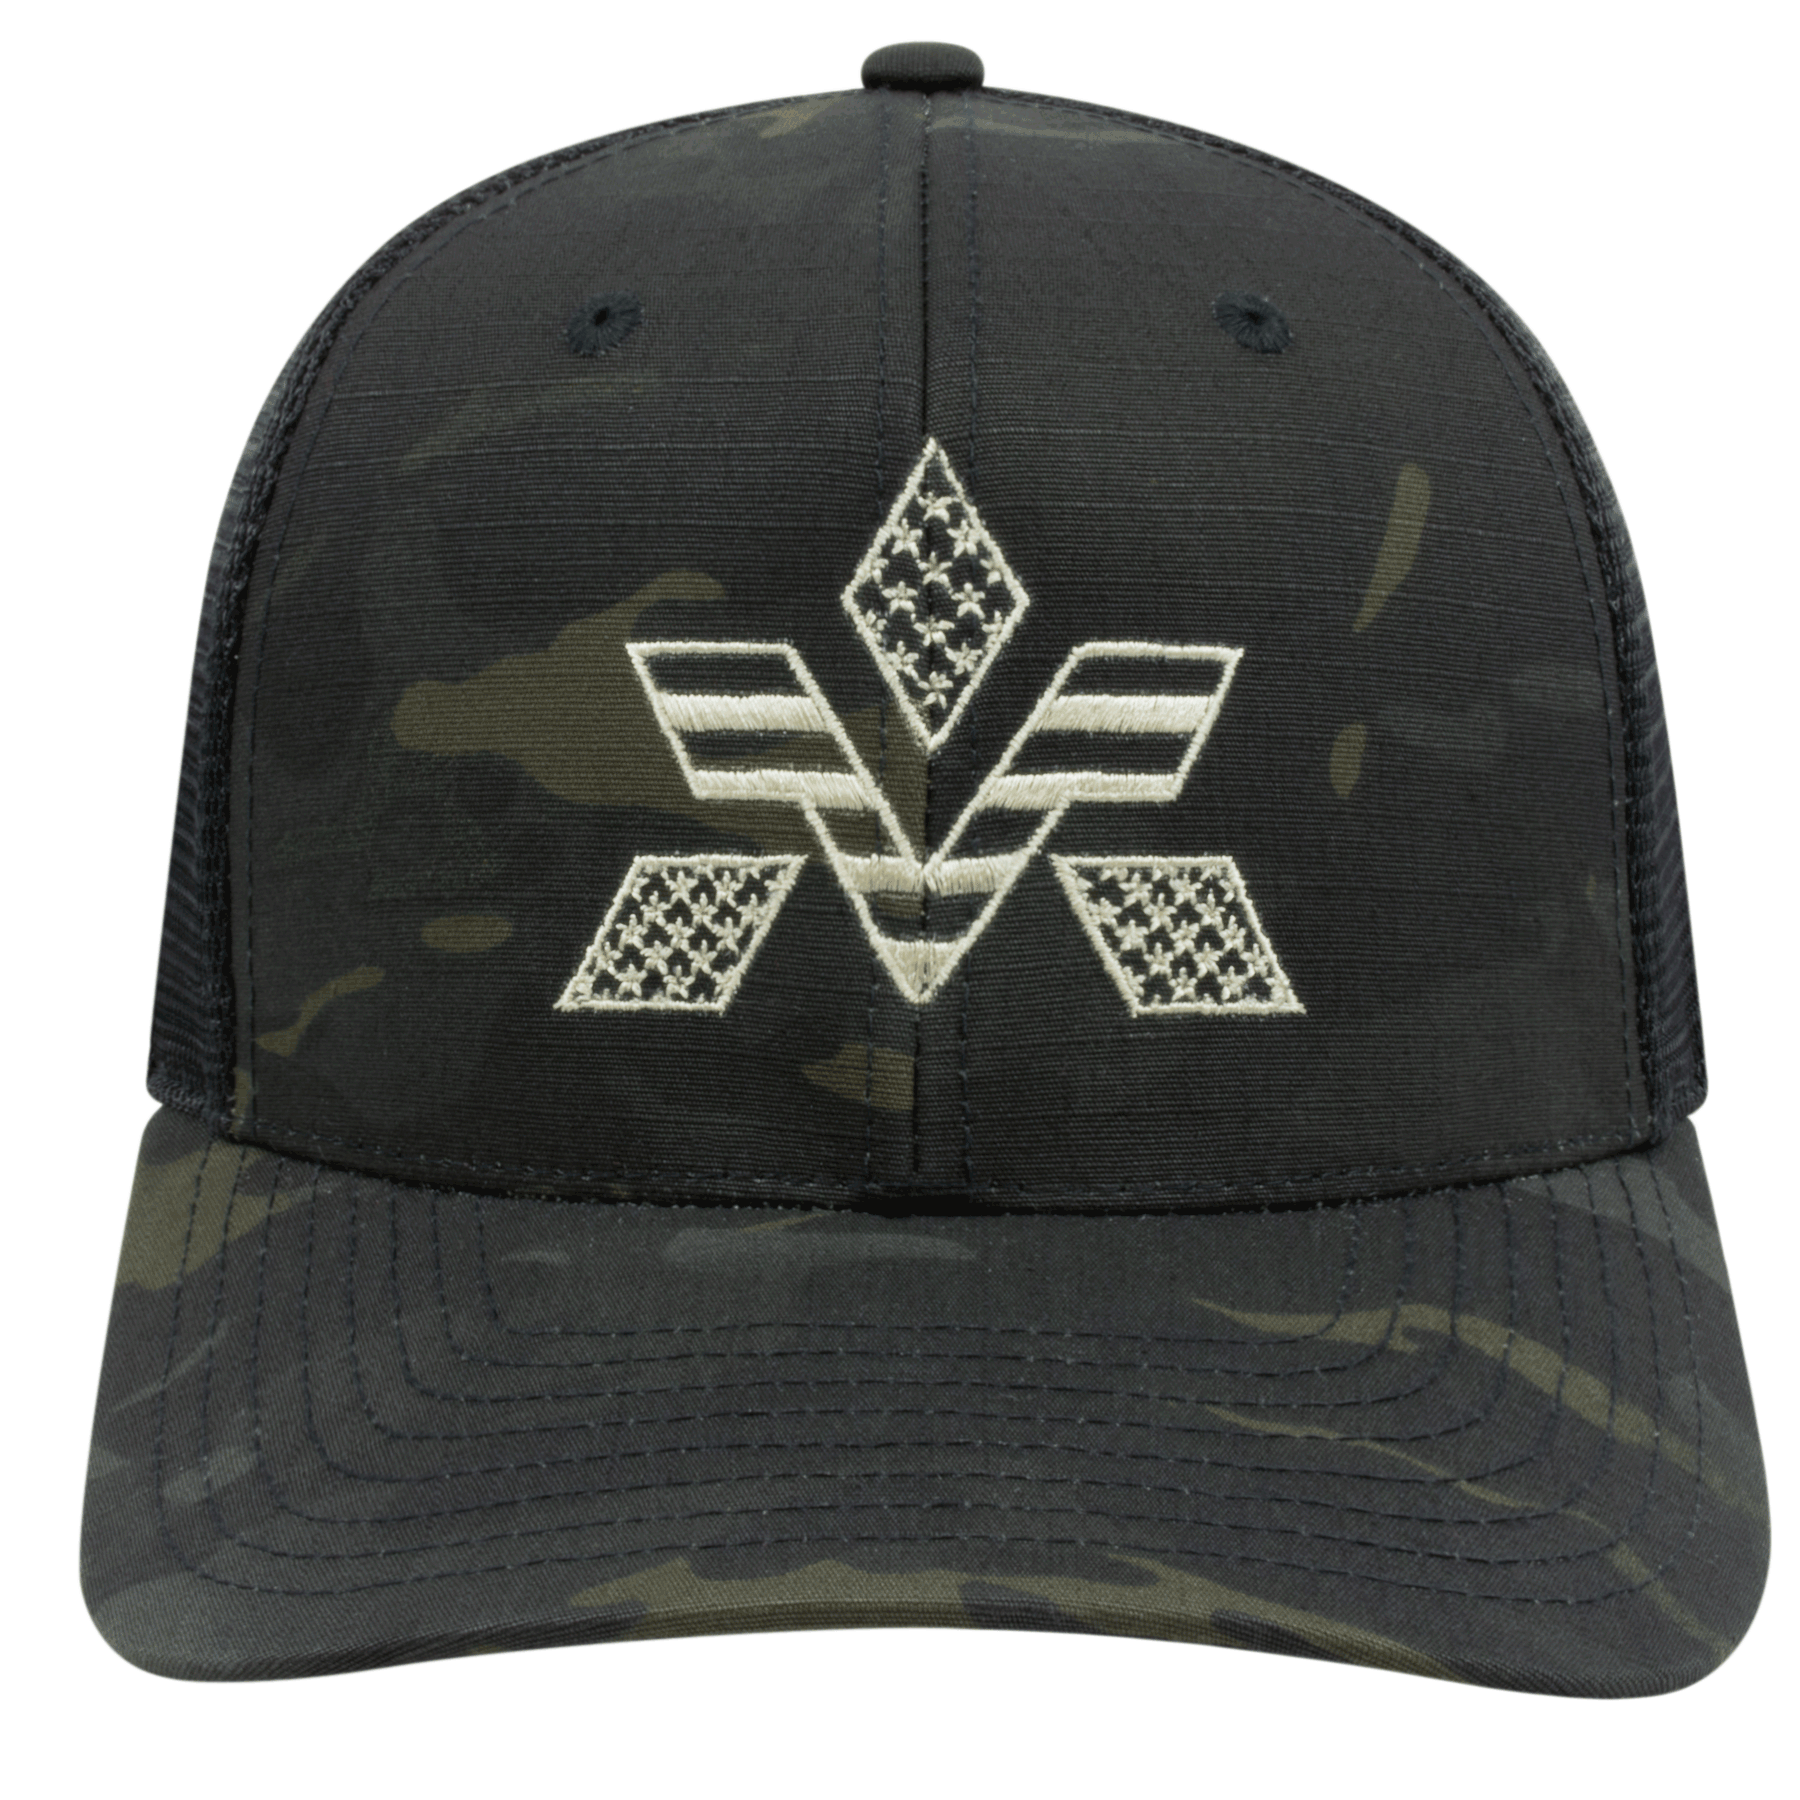 Veterans Apparel Premium Flex fit Snapback Trucker Mesh Cap